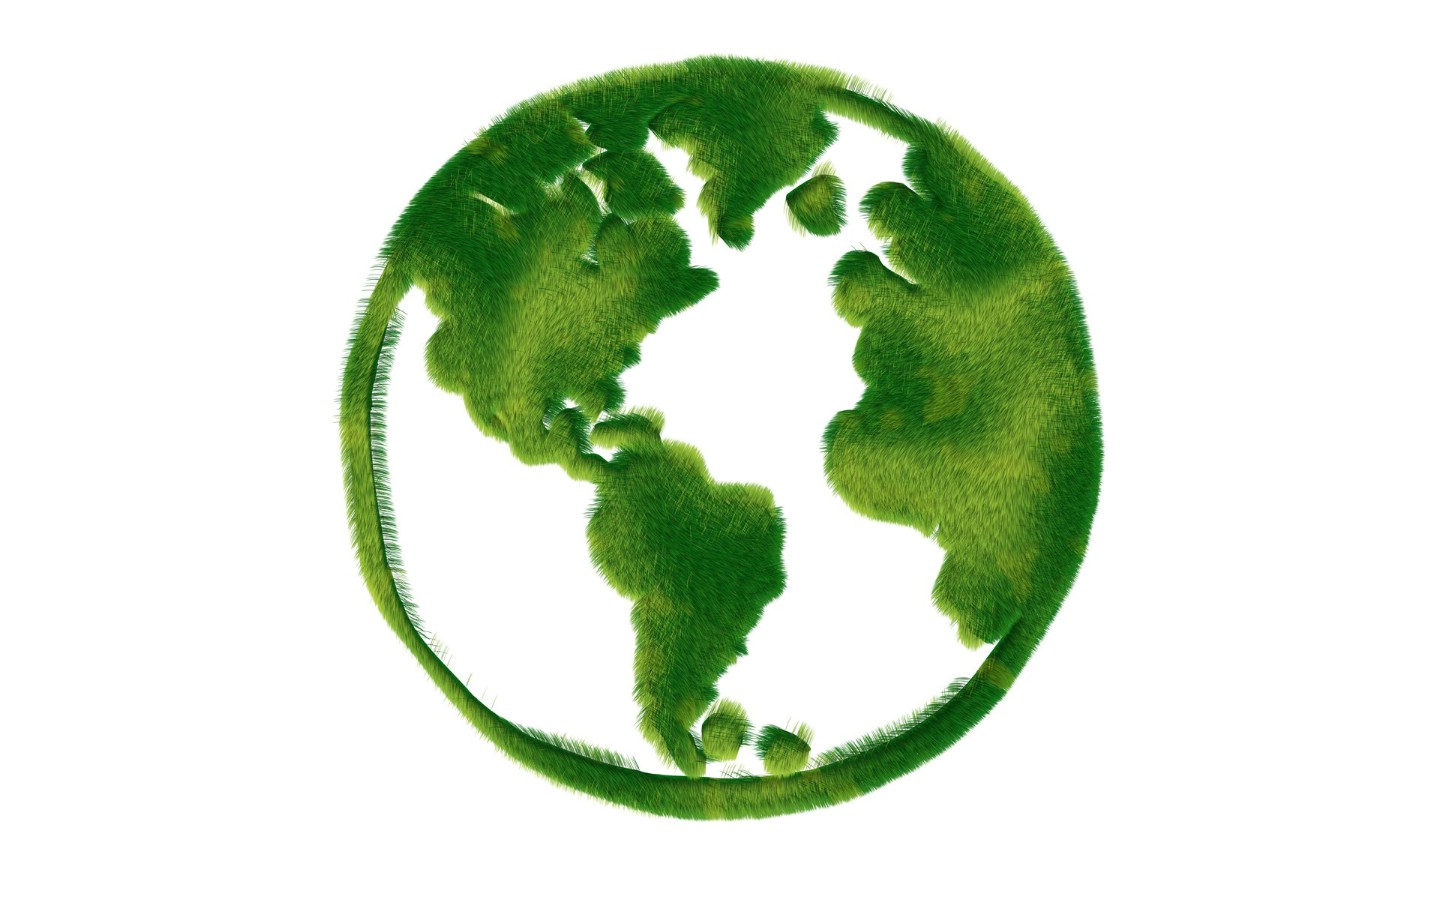 壁纸1440x900 绿色地球 绿色和平环保标志 1920 1200壁纸 绿色和平环保标志-循环利用壁纸 绿色和平环保标志-循环利用图片 绿色和平环保标志-循环利用素材 插画壁纸 插画图库 插画图片素材桌面壁纸